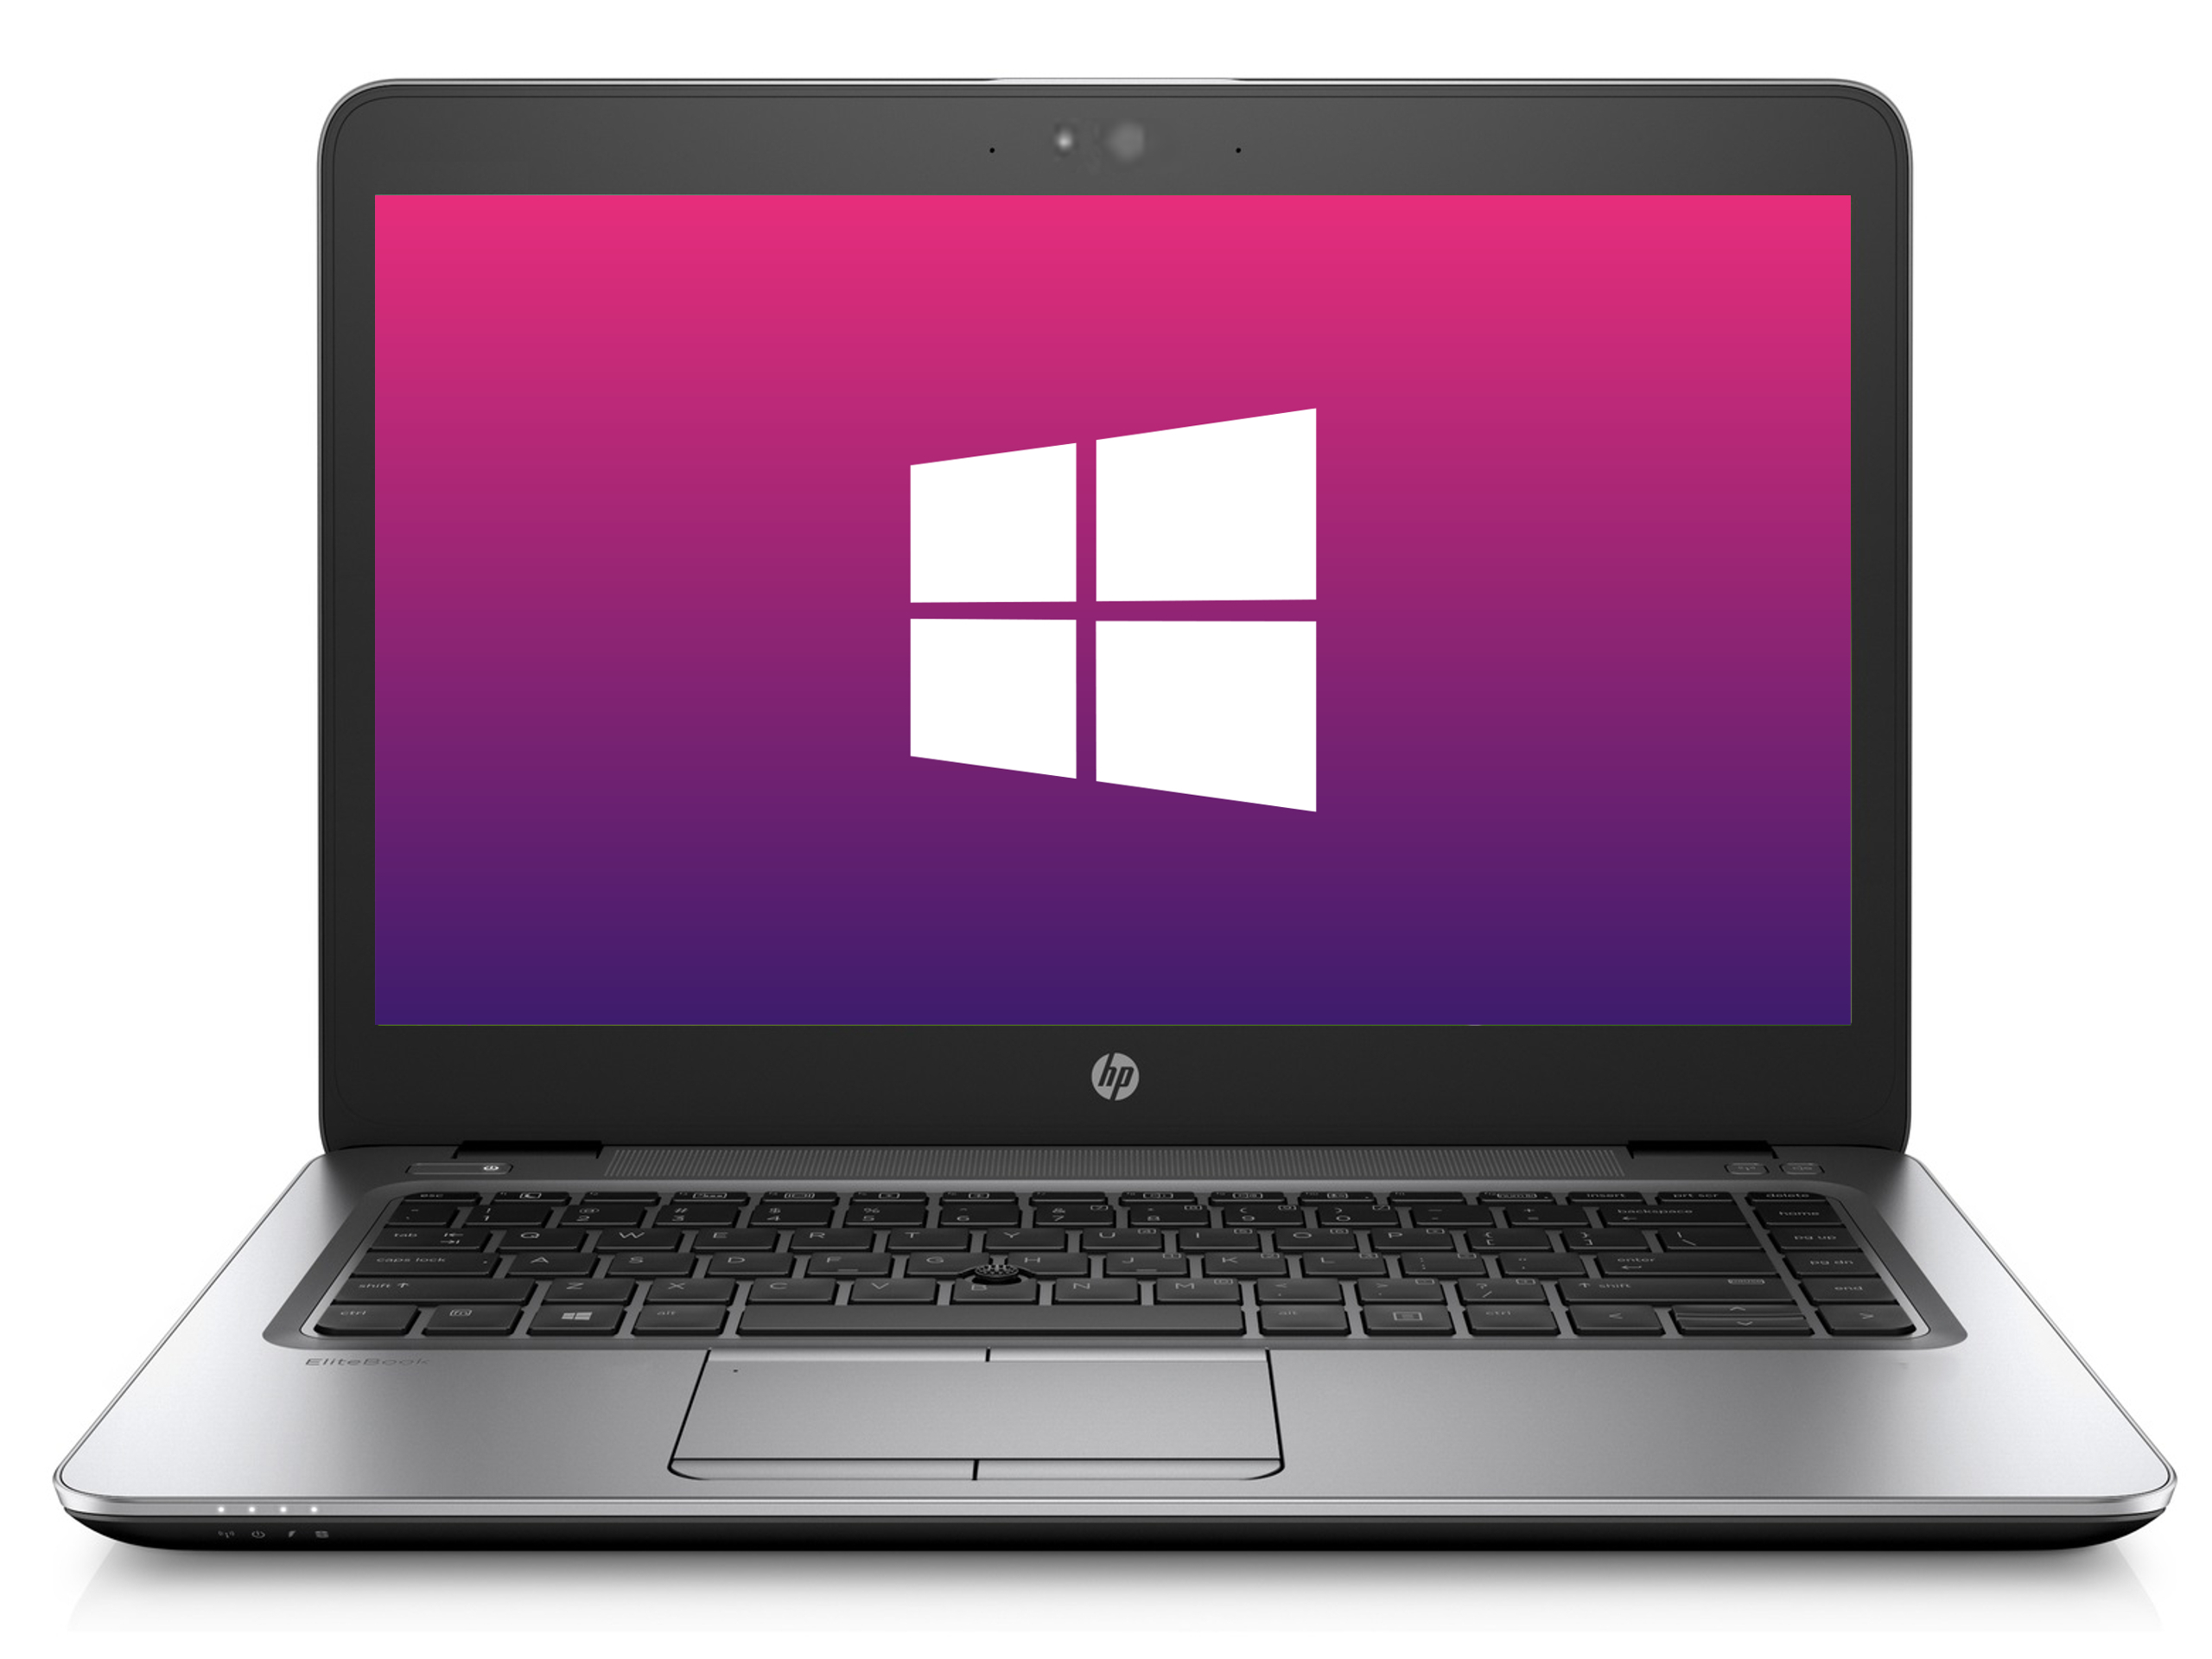 Ultrabook HP 840 G2 * 1366x768* 8GB * 240GB SSD